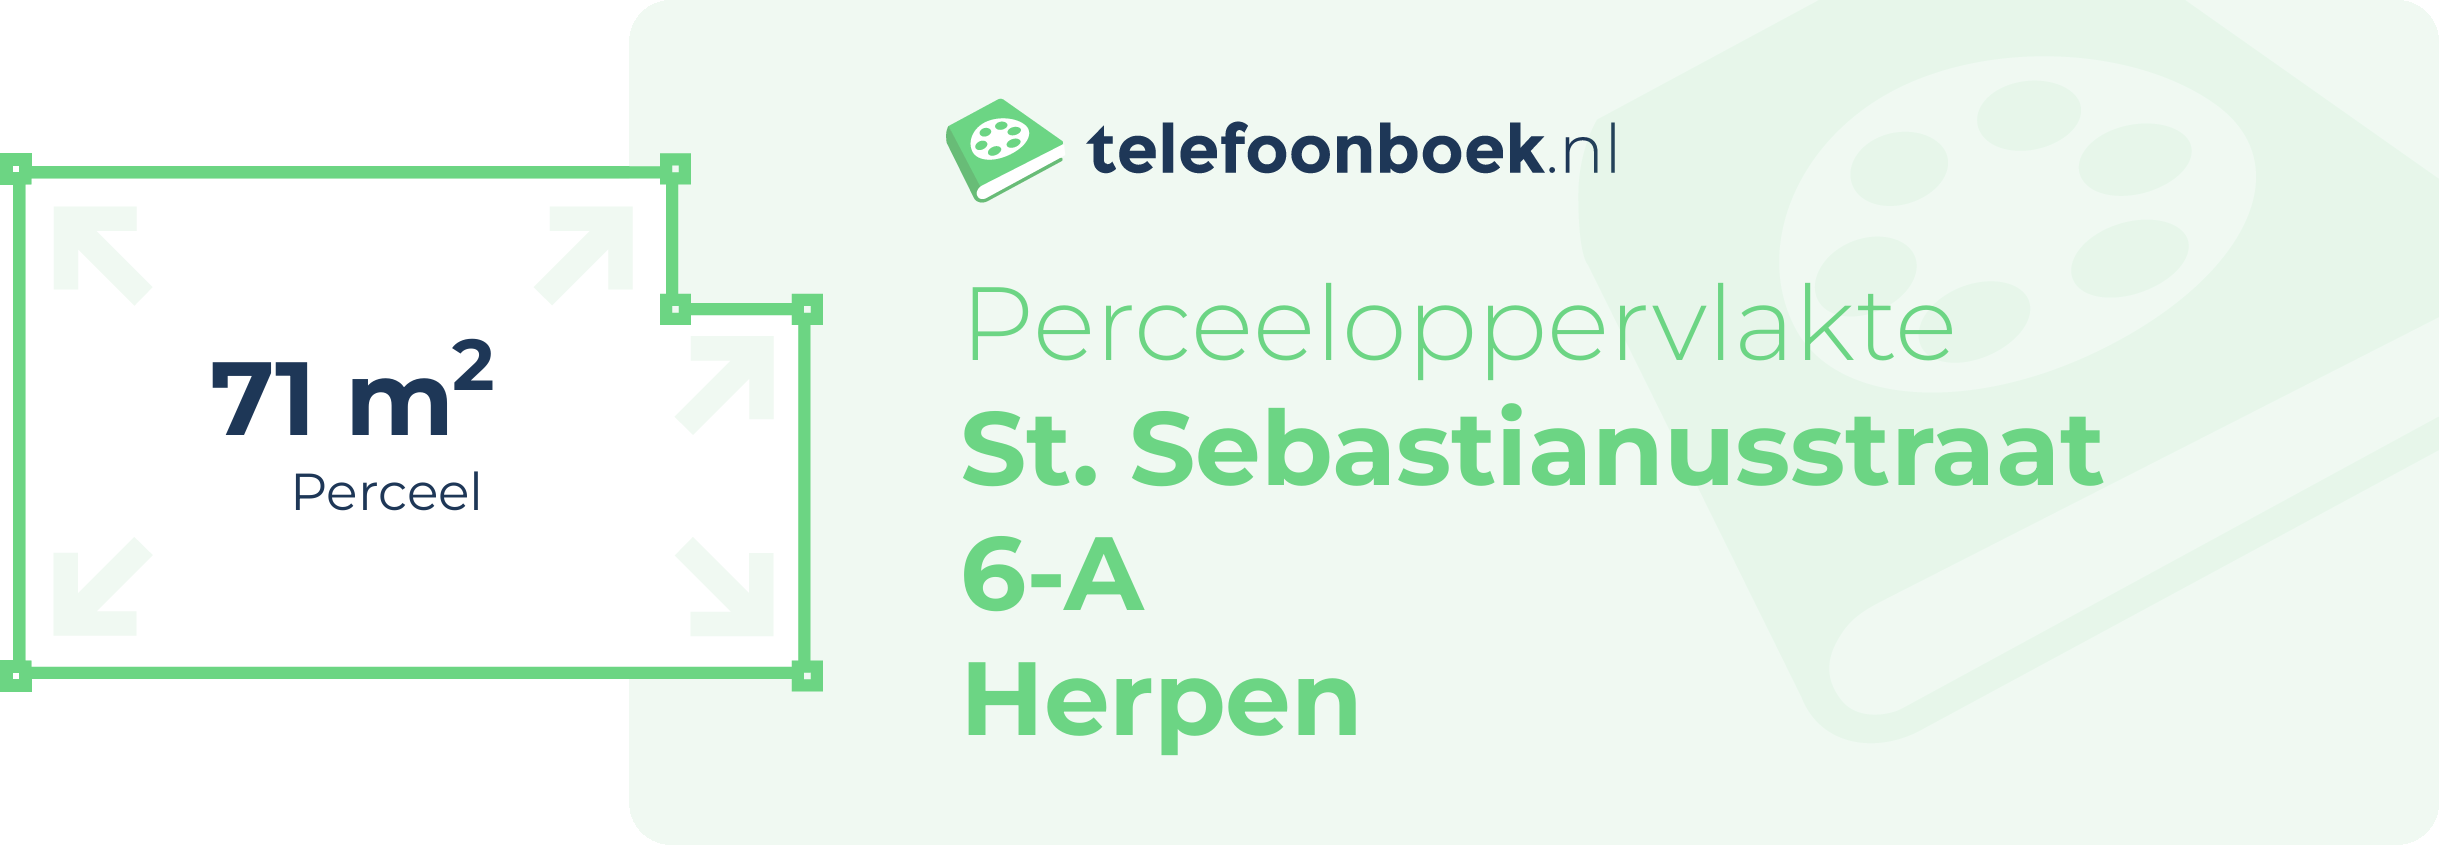 Perceeloppervlakte St. Sebastianusstraat 6-A Herpen